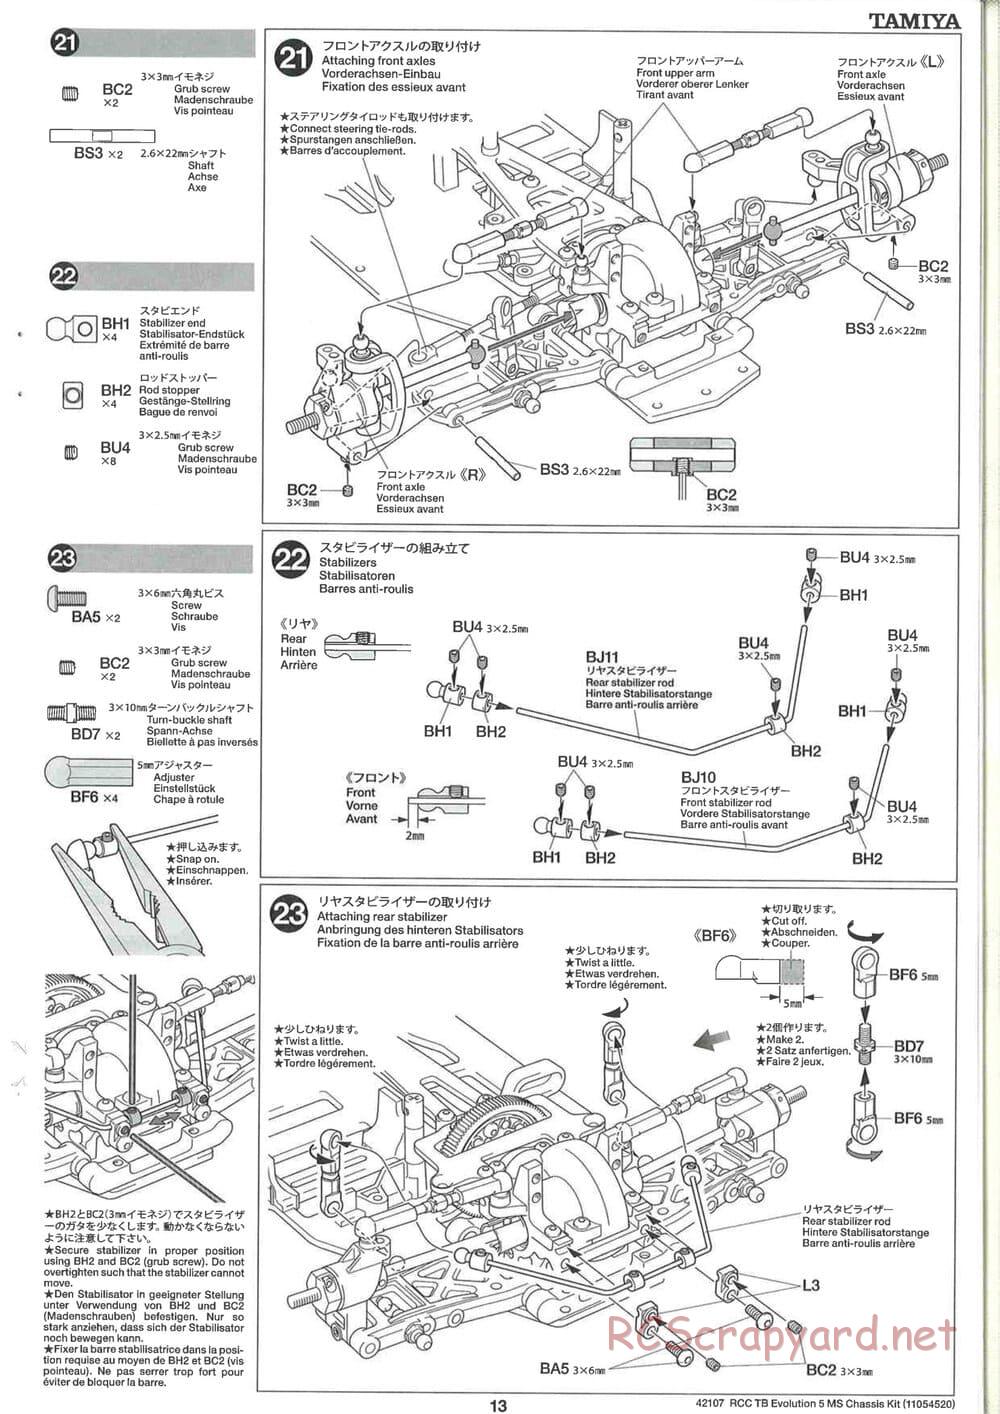 Tamiya - TB Evolution 5 MS Chassis - Manual - Page 13